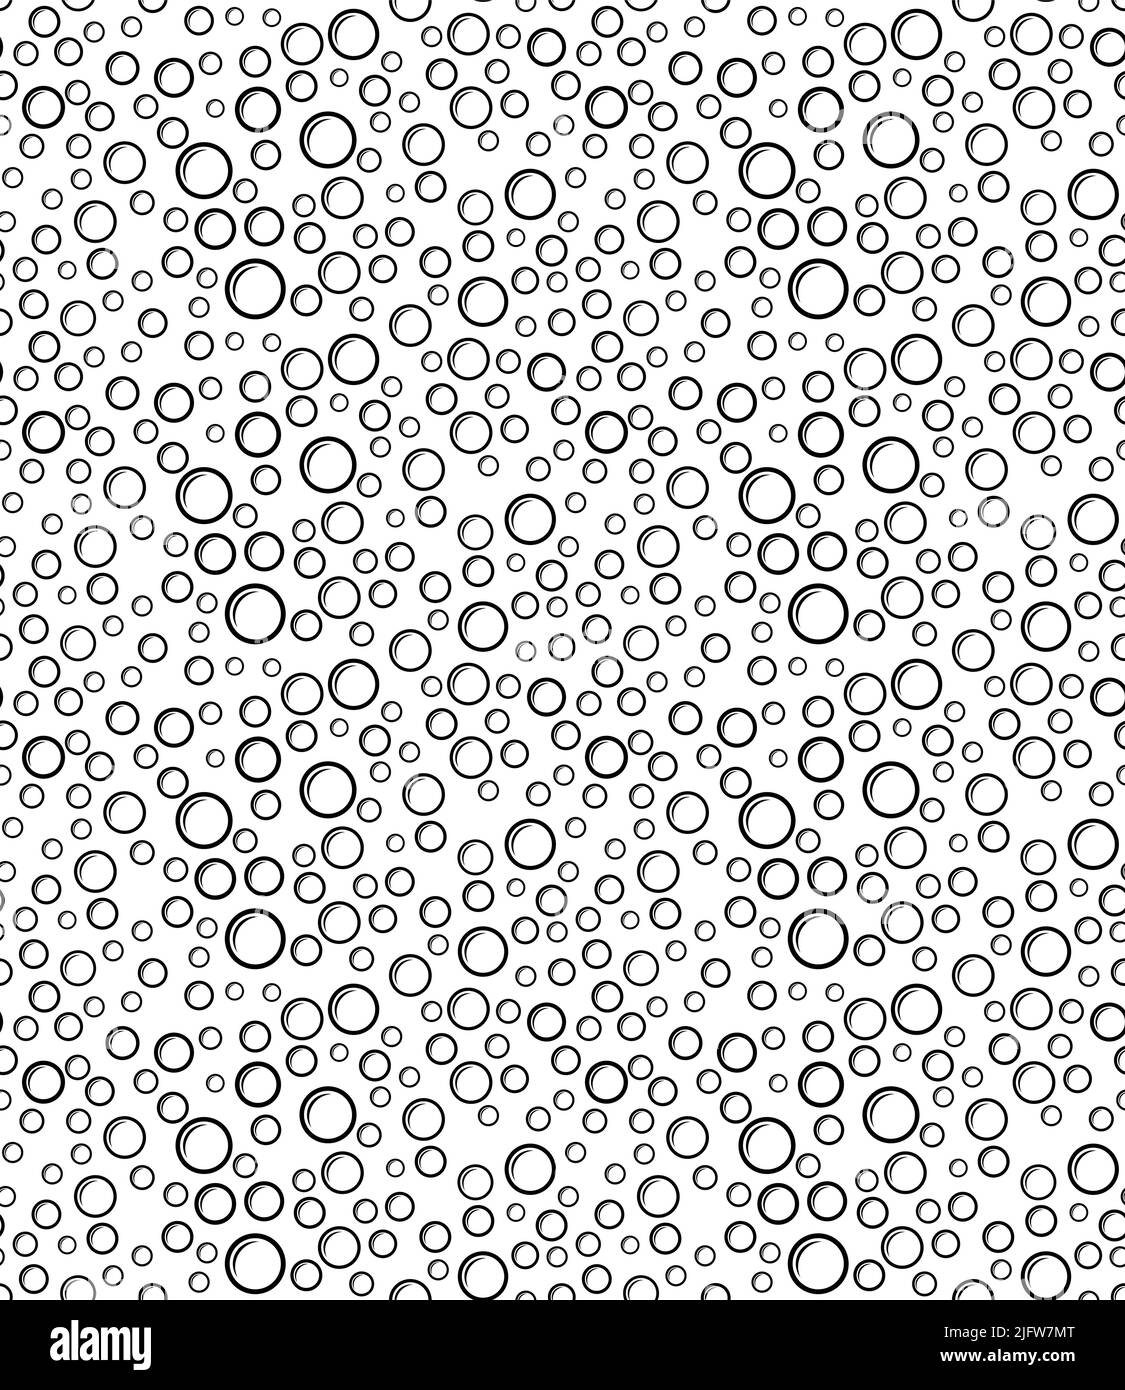 Bubble Icon Seamless Pattern Vector Art Illustration Stock Vector